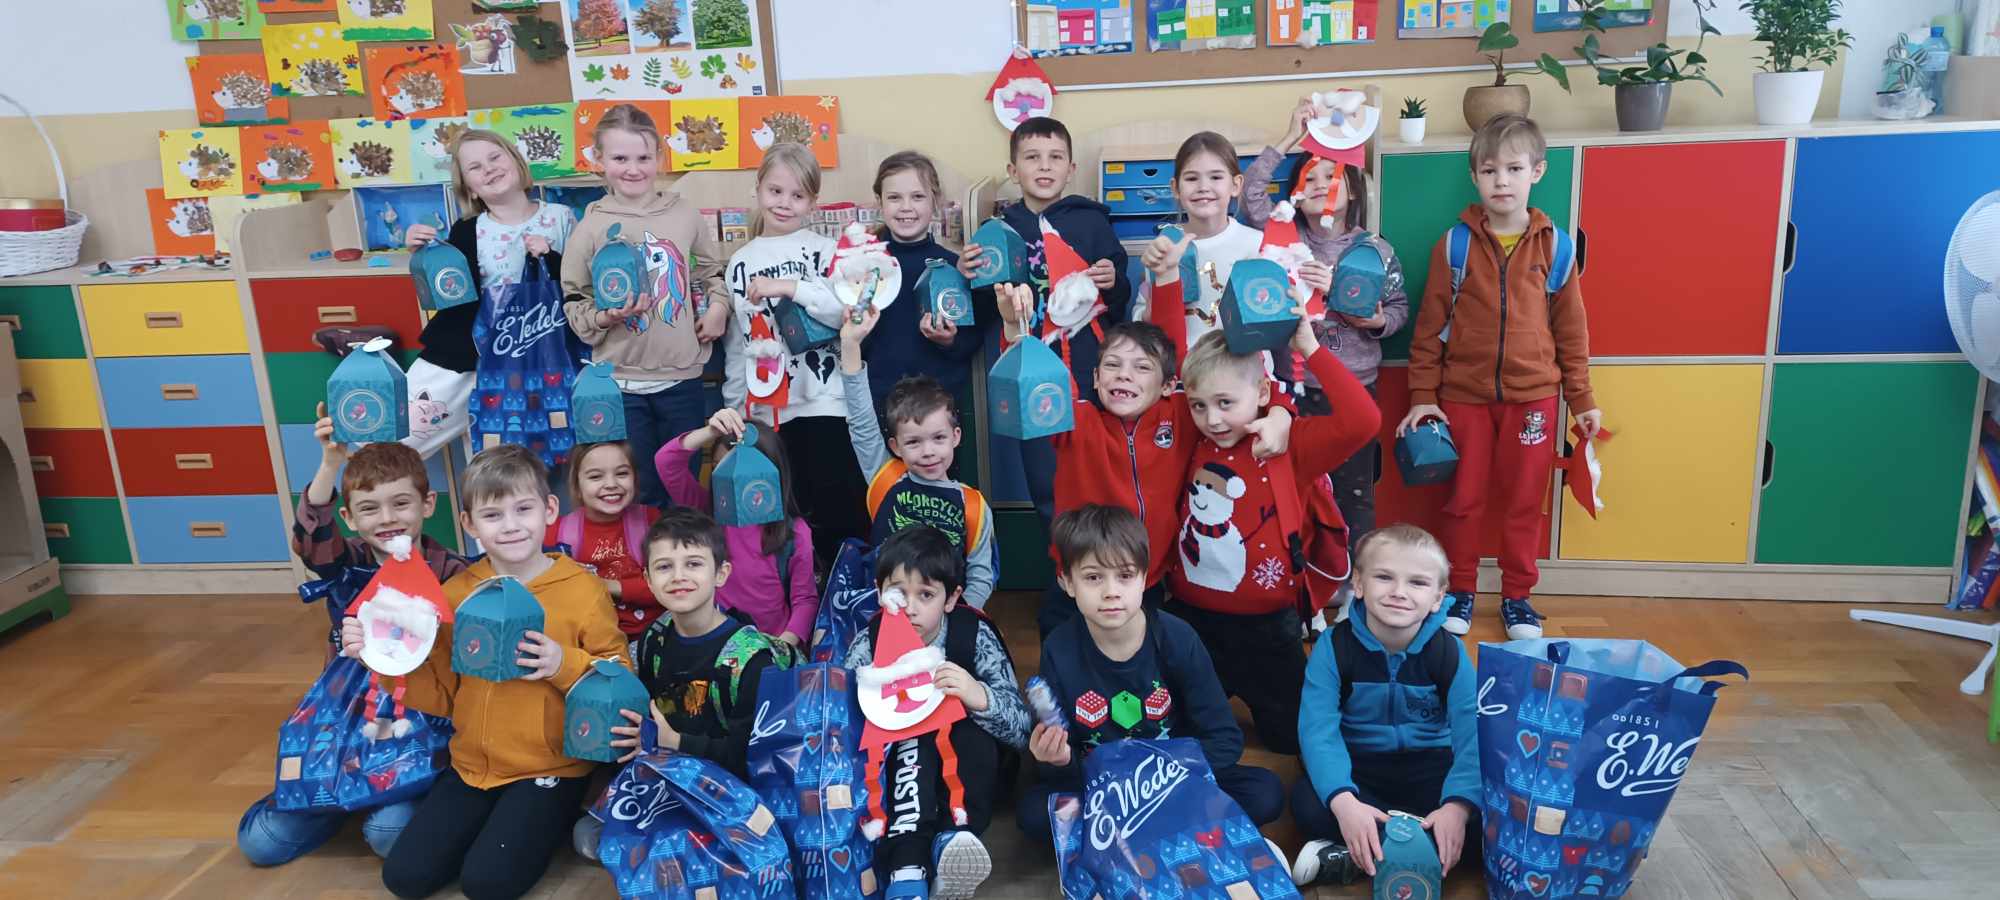 Sala szkolna, uczniowie ustawieni w trzech rzędach trzymający papierowe Mikołaje i niebieskie torby z napisem Wedel.